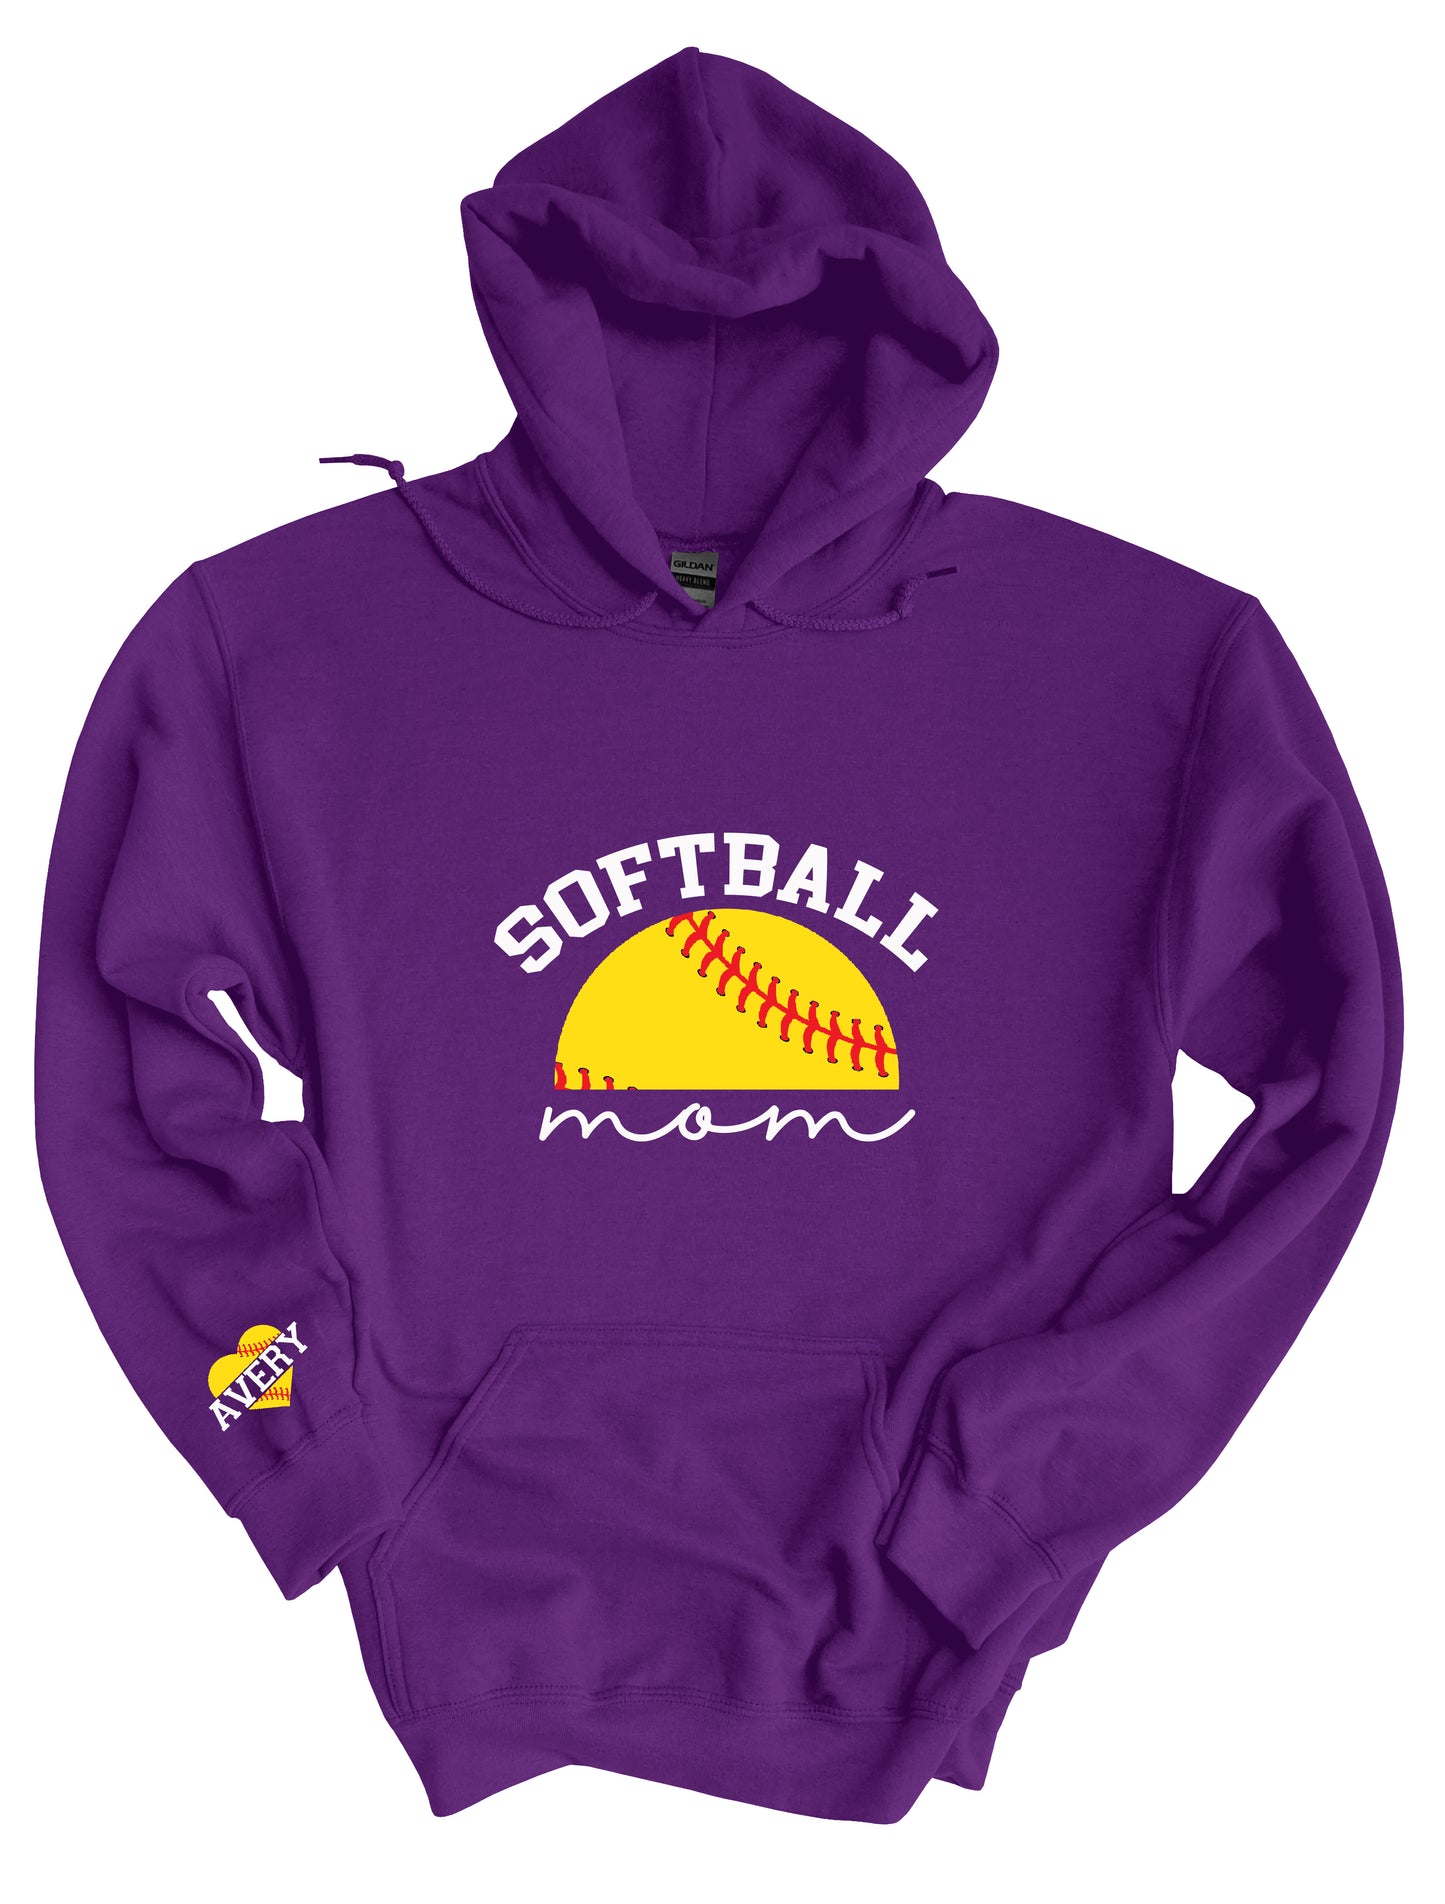 Softball Mom Name on Sleeve